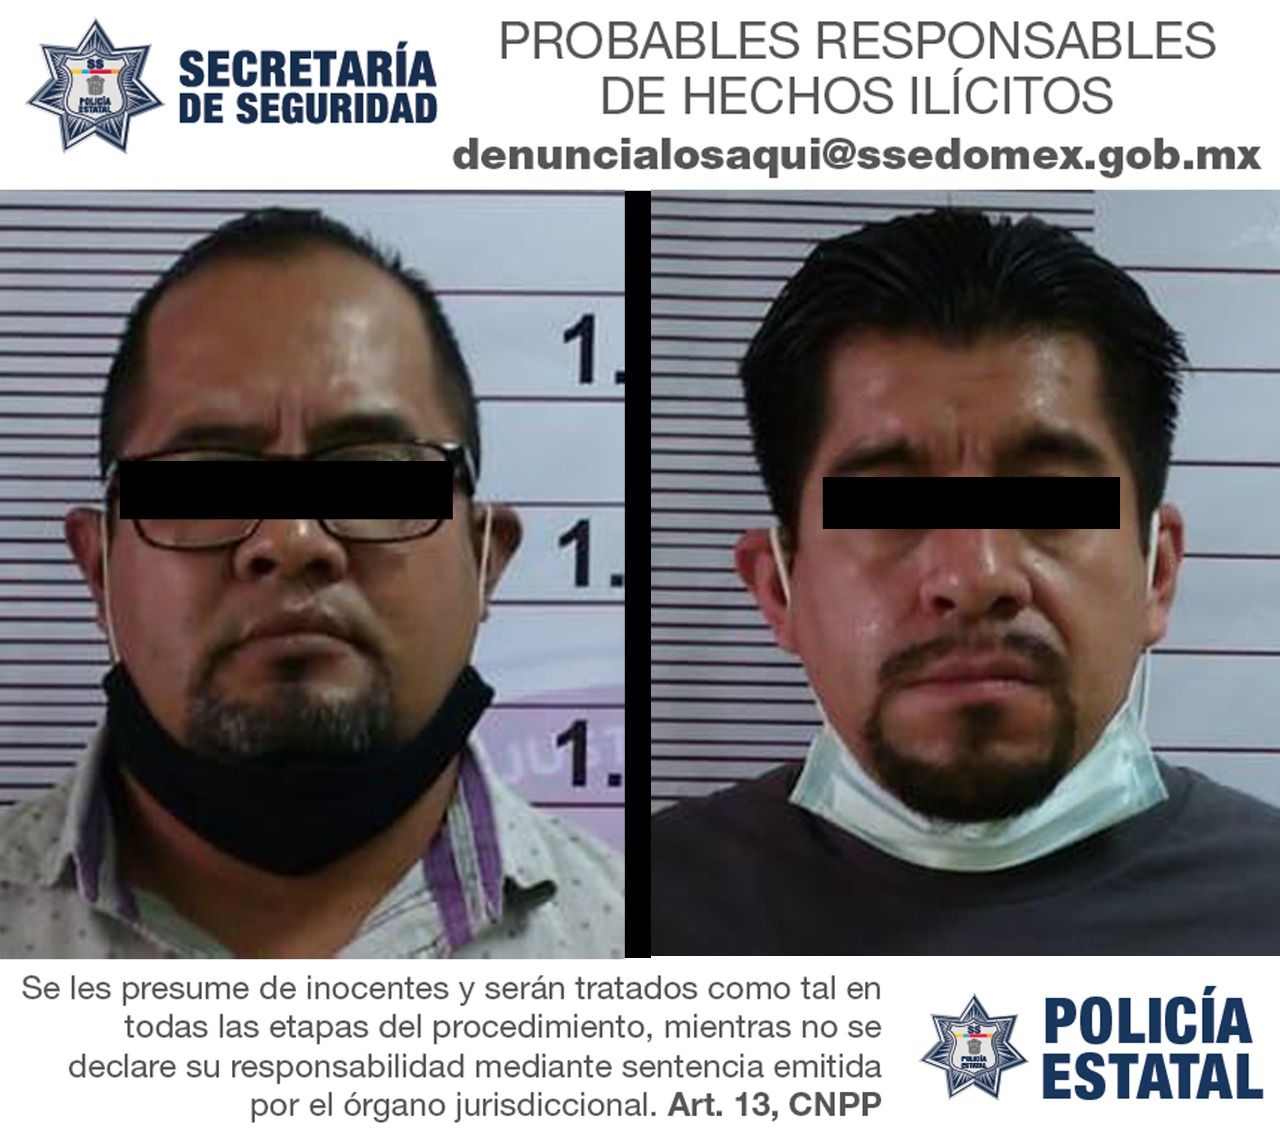 
#Detienen a dos extorsionadores en Chimalhuacán, cobraban 100 mil por derecho de piso